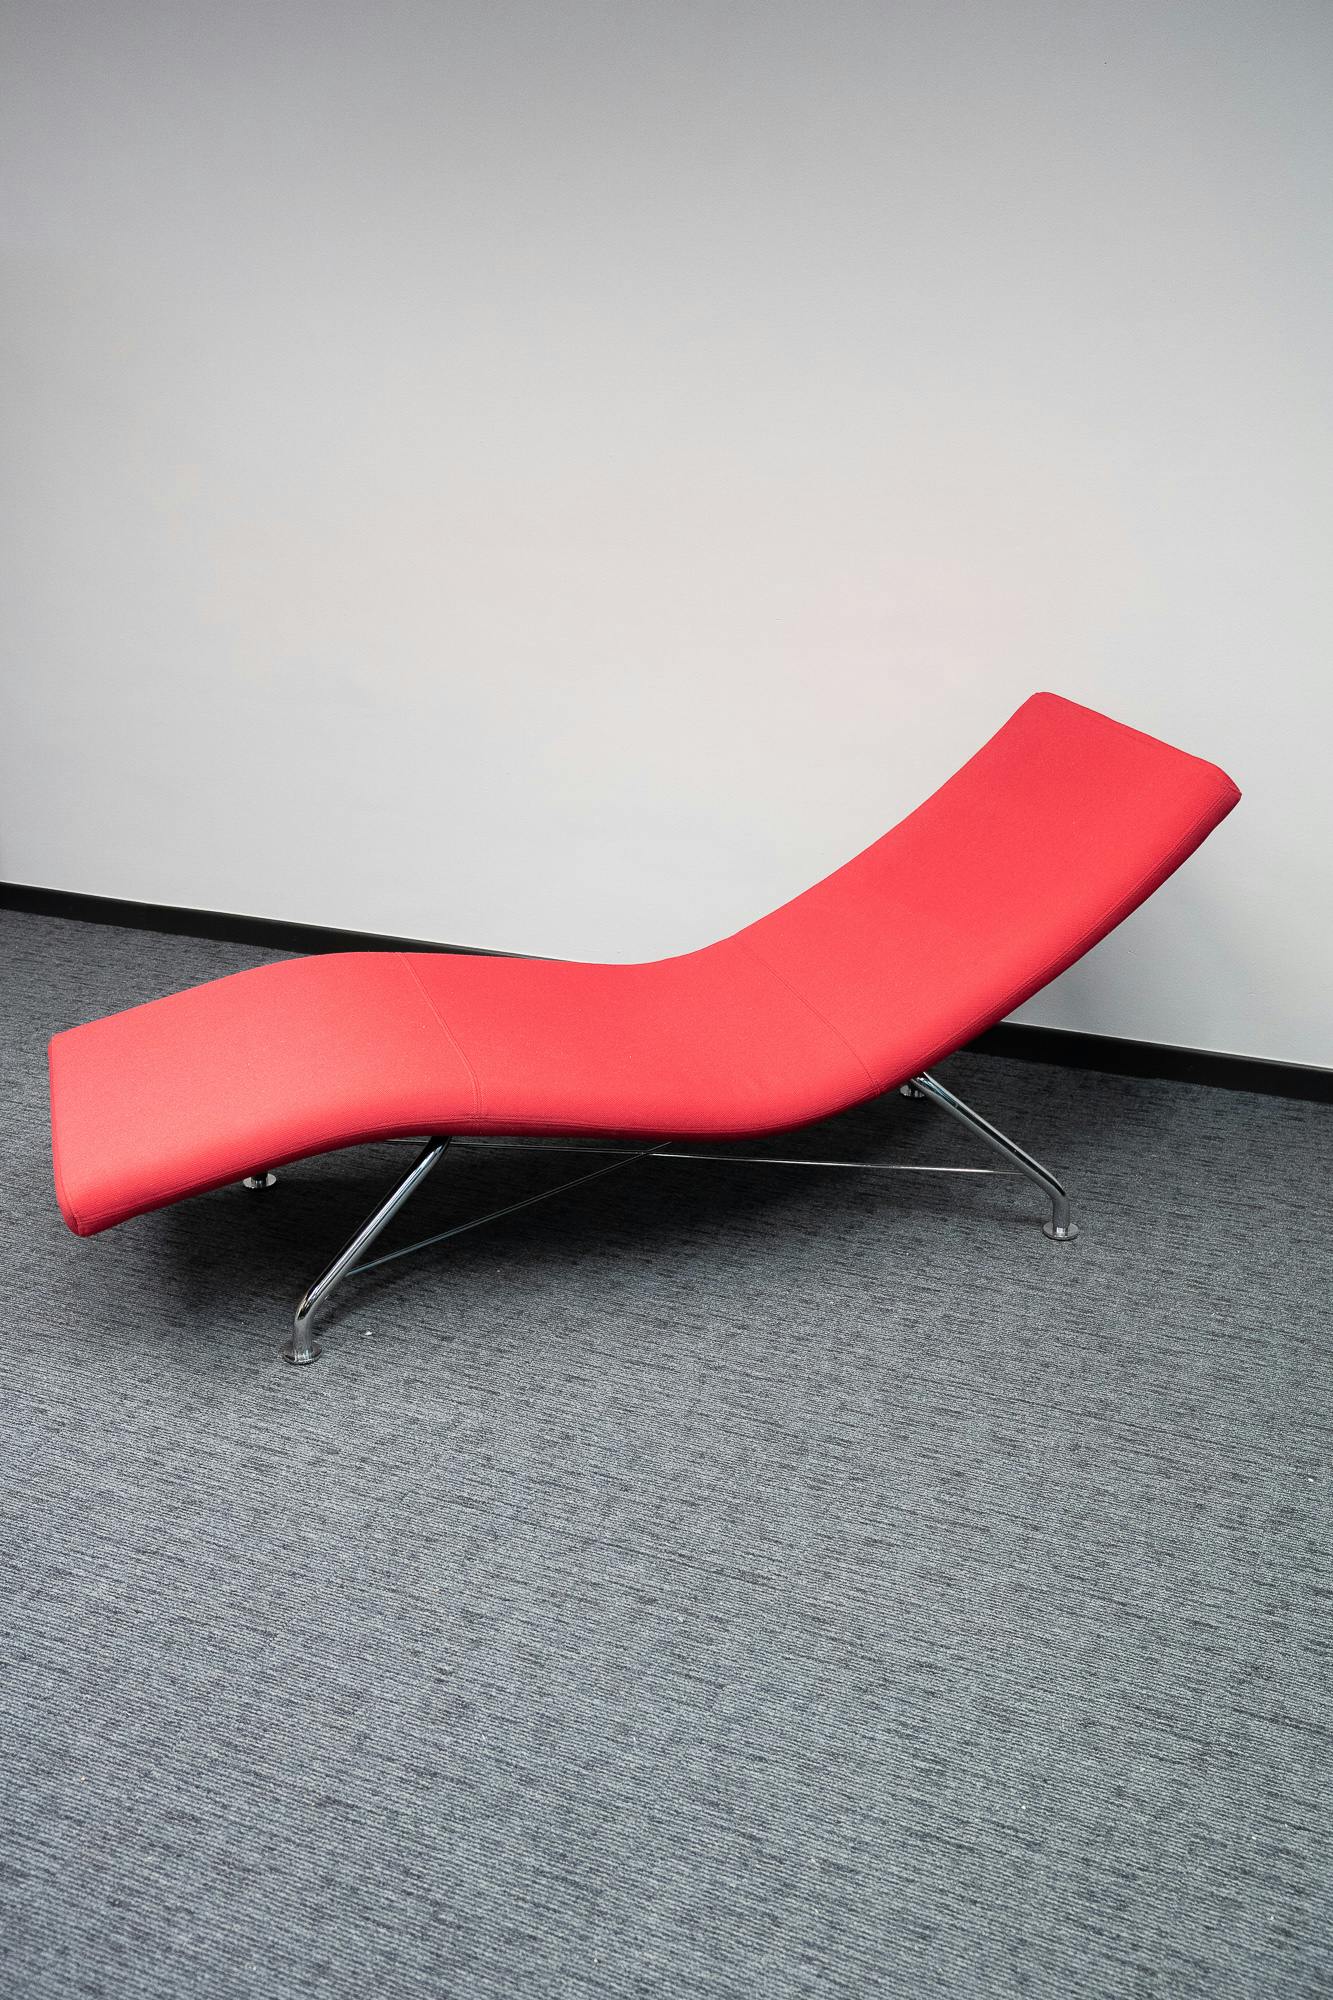 Sense rode chaise longue van Softline - Tweedehands kwaliteit "Stoelen" - Relieve Furniture - 2